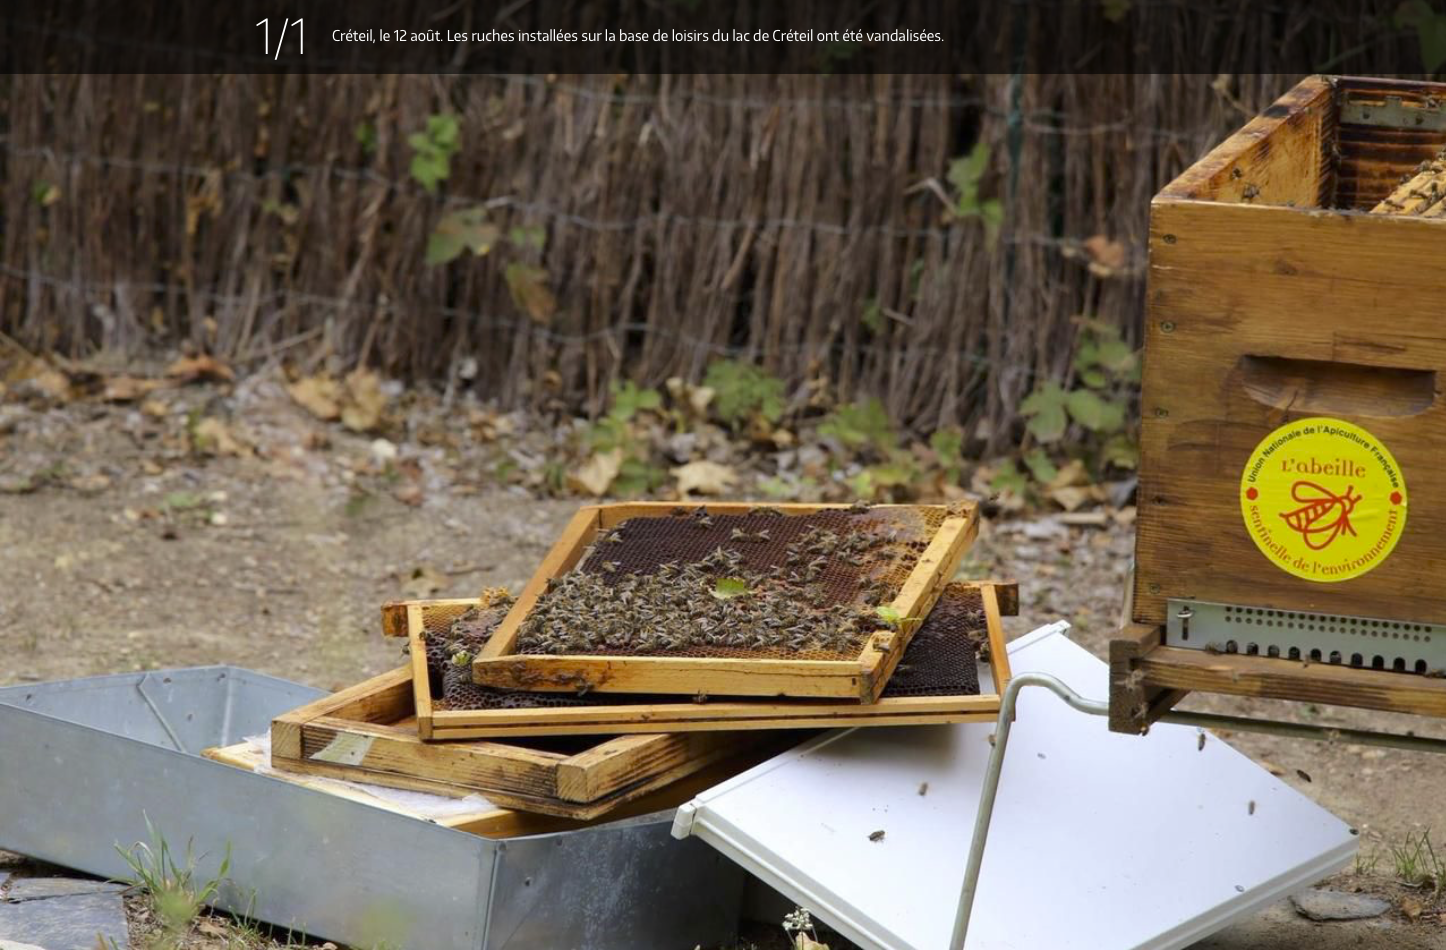 Créteil, le 12 août. Les ruches installées sur la base de loisirs du lac de Créteil ont été vandalisées. 